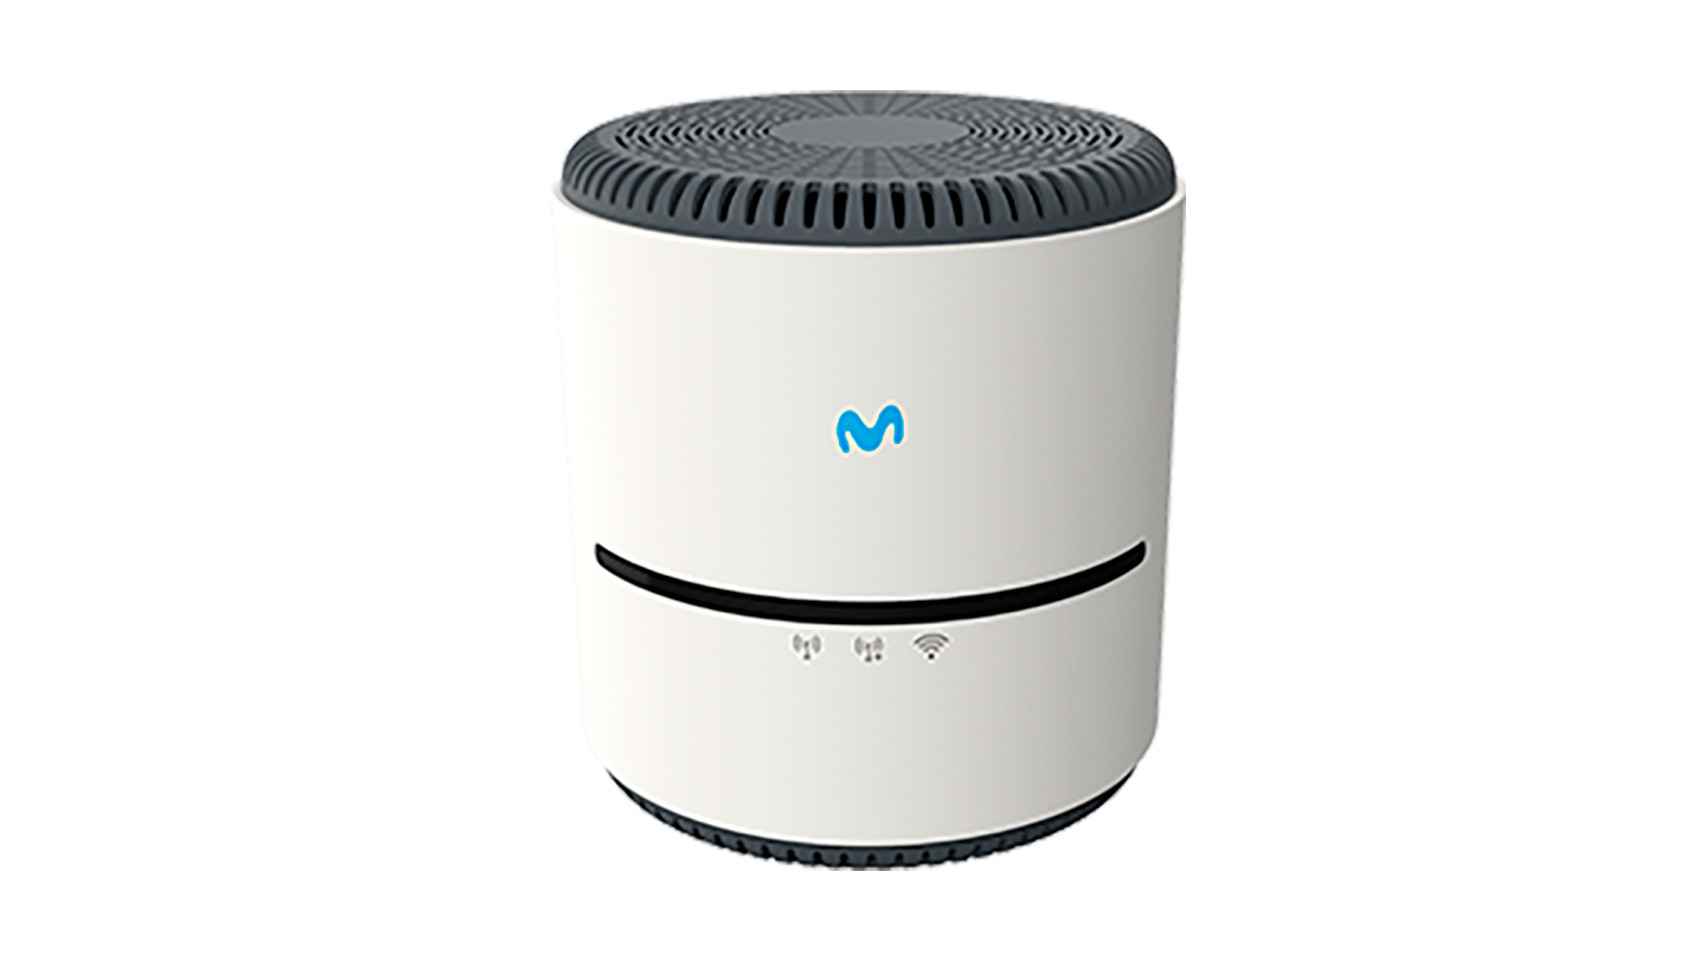 Imagen del amplificador WiFi actual que Movistar ofrece a sus clientes